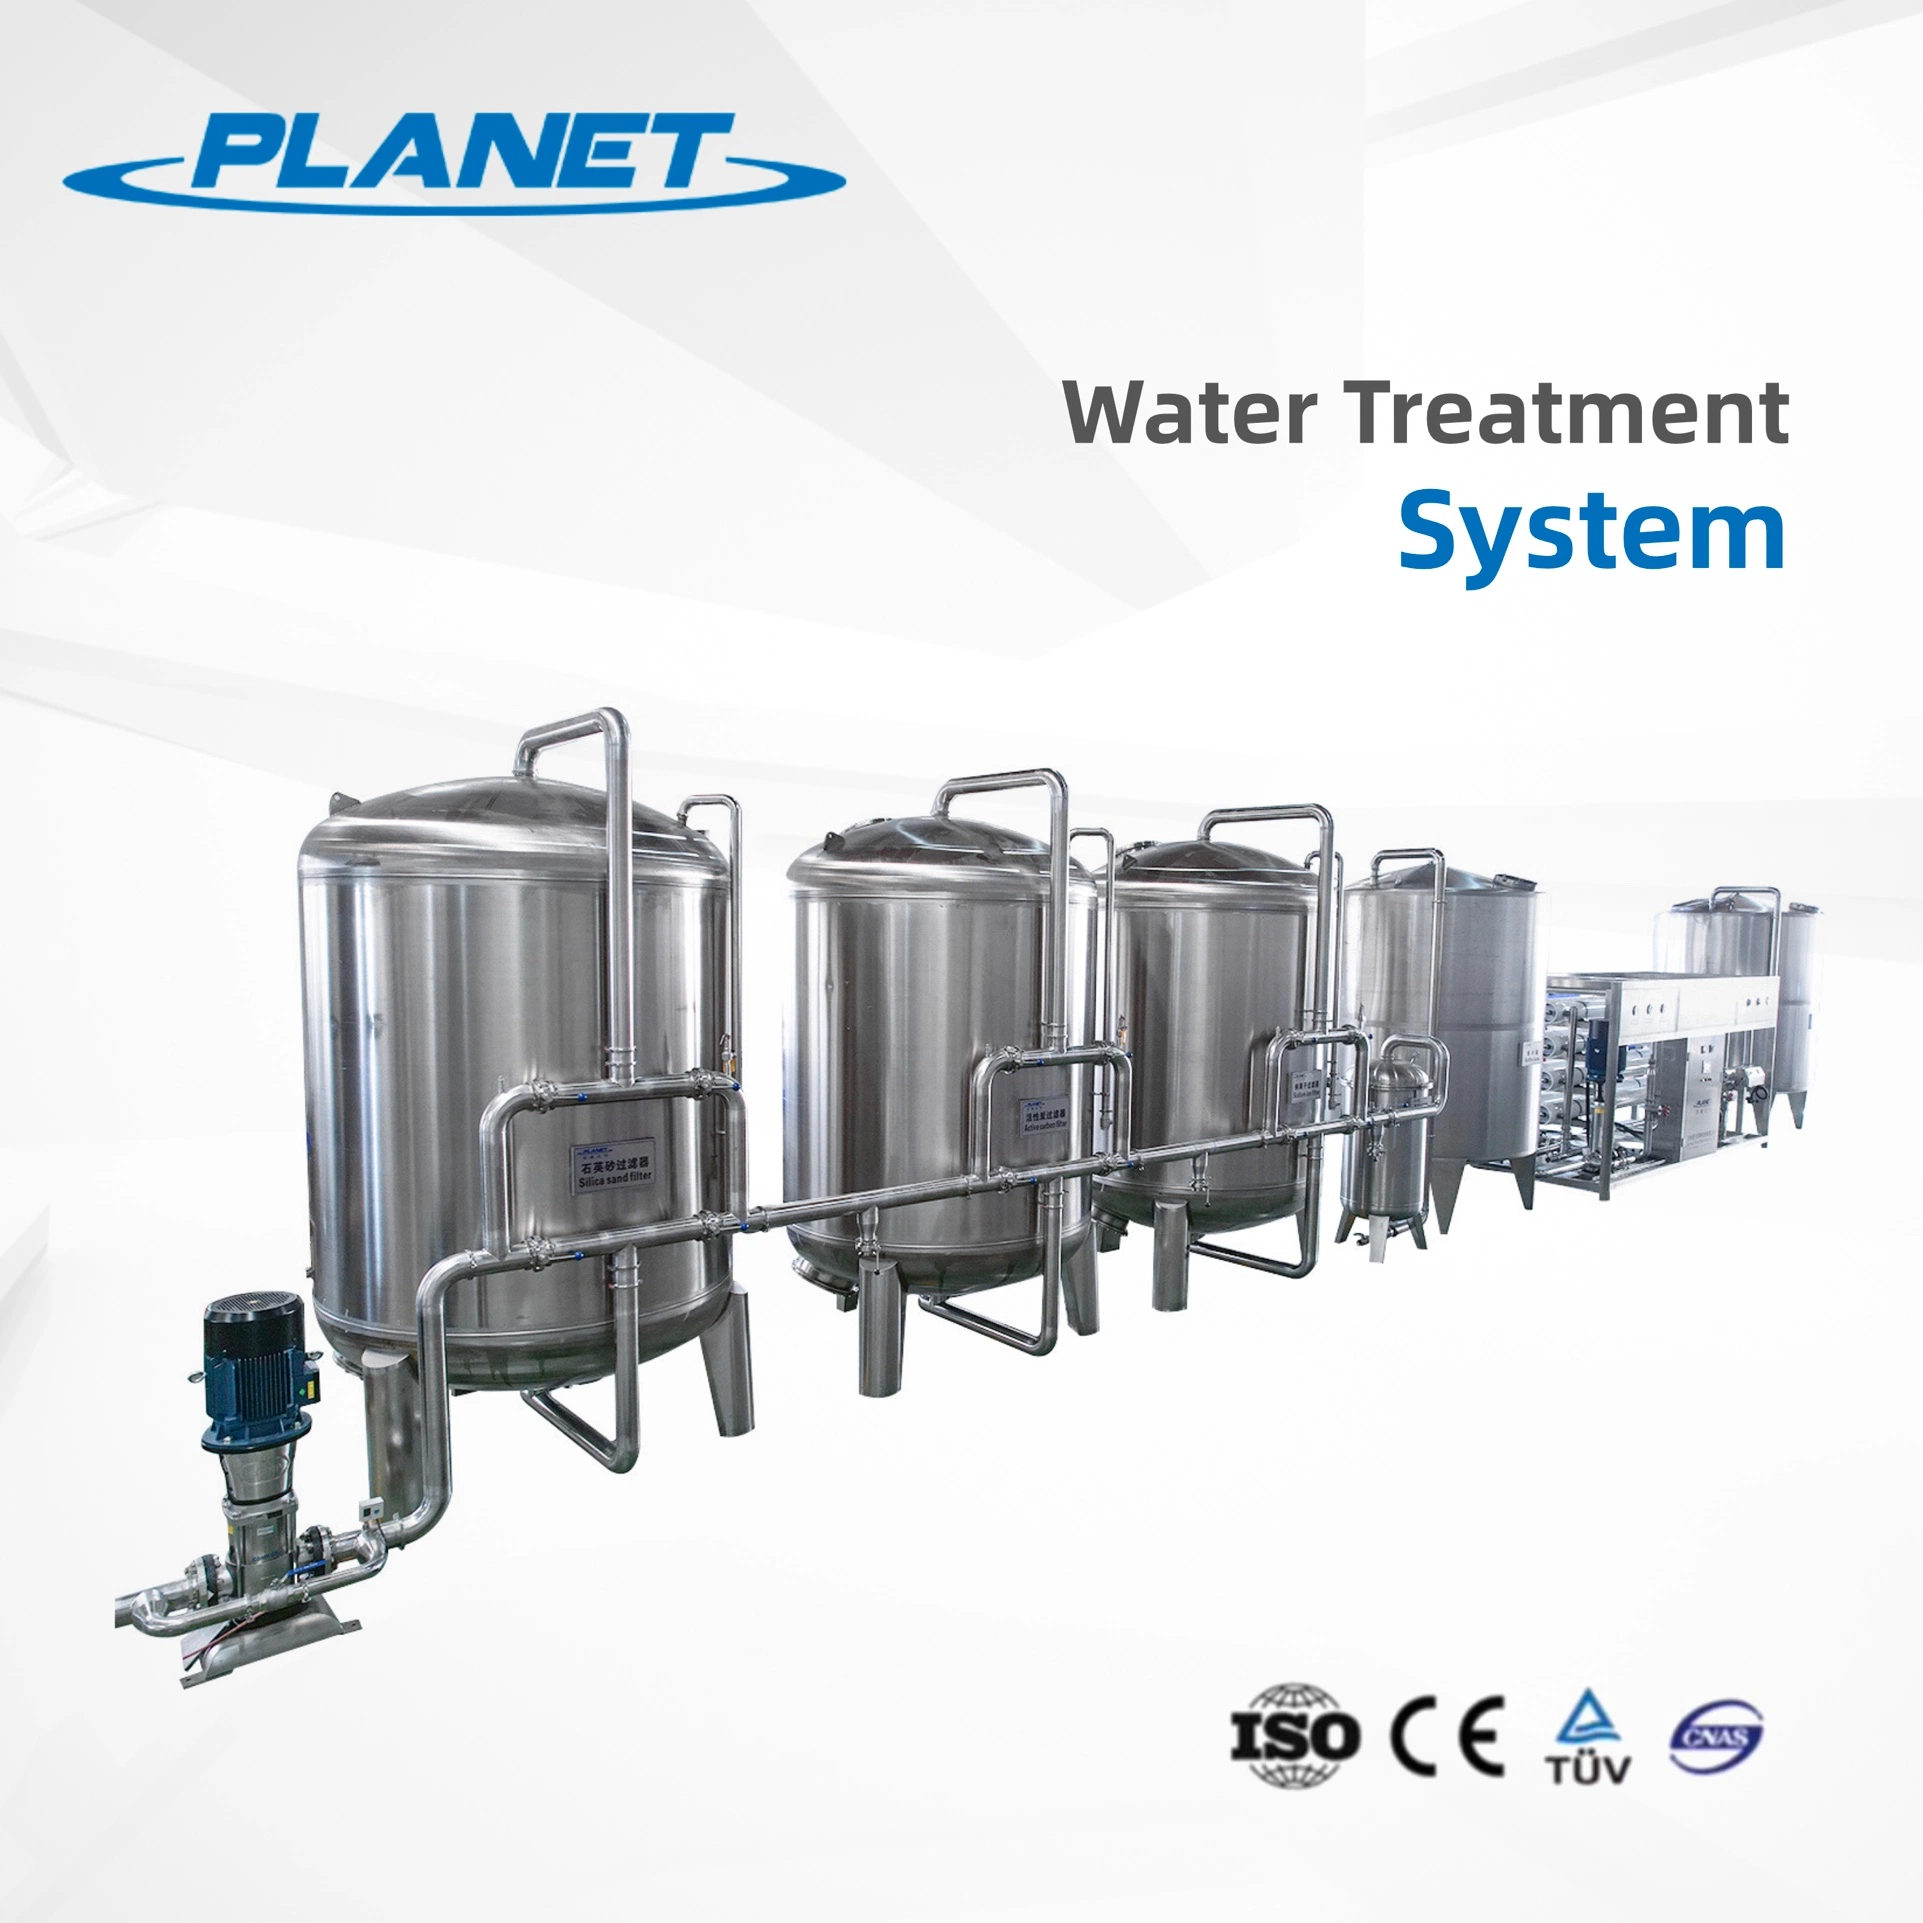 ÁGUA POTÁVEL ÁGUA POTÁVEL indústria de dessalinização tratamento industrial de águas residuais Purificação da água de plantas sistemas de filtragem de água Osmose inversa sistemas de filtração